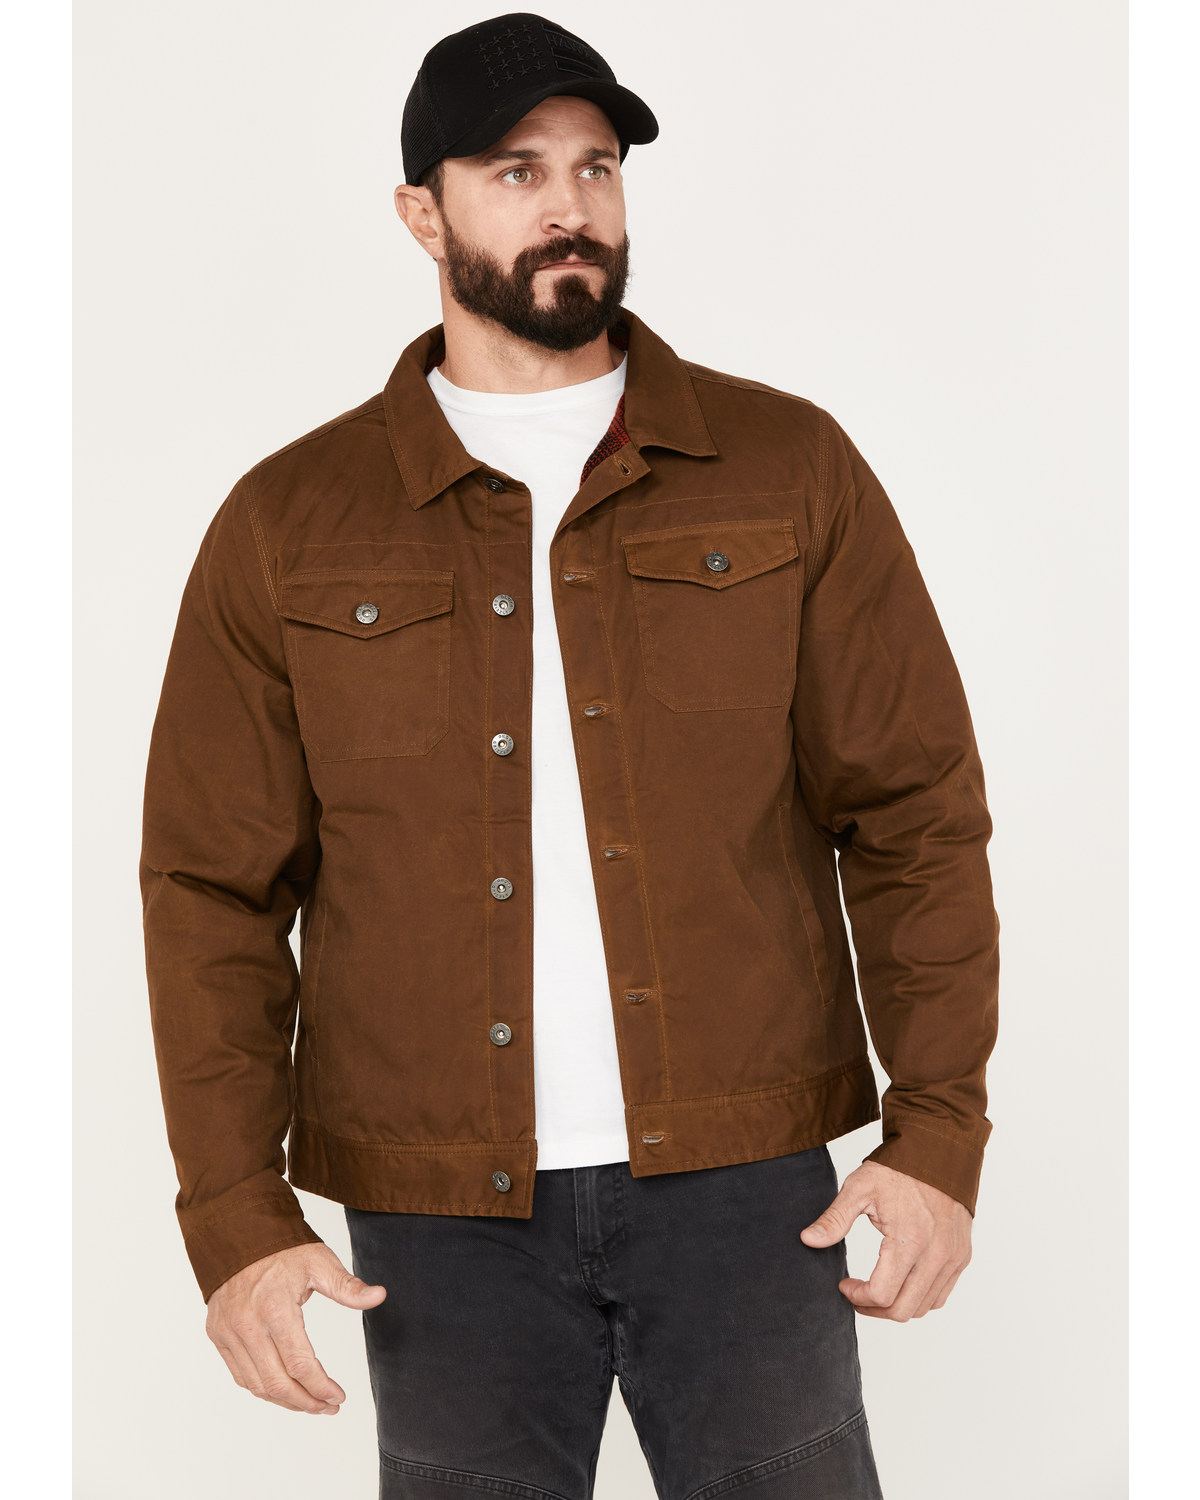 Dakota Grizzly Men's Colt Trucker Flannel Lined Jacket